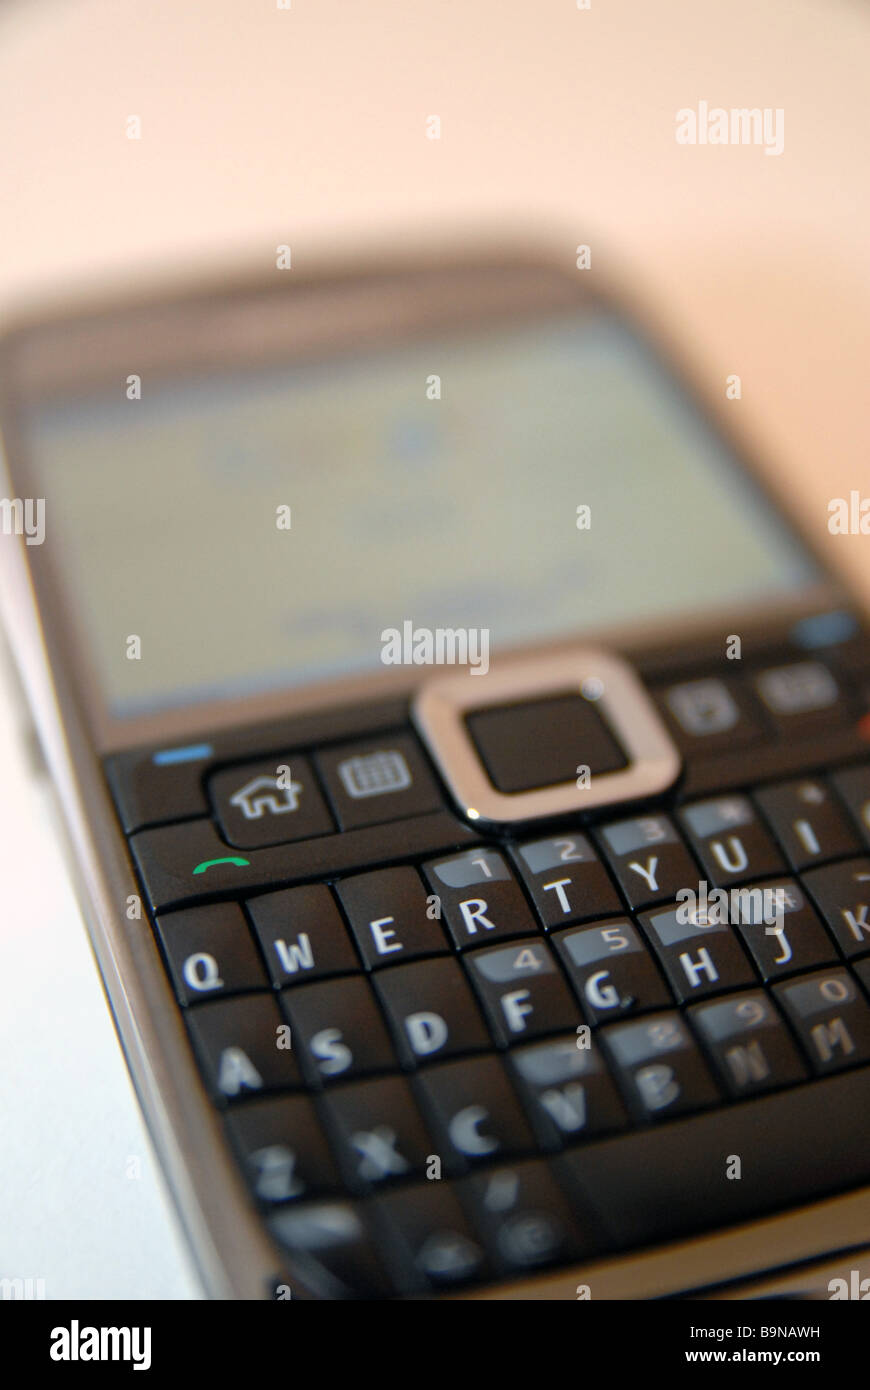 Un telefono cellulare Nokia/dispositivo con tastiera QWERTY completa Foto Stock